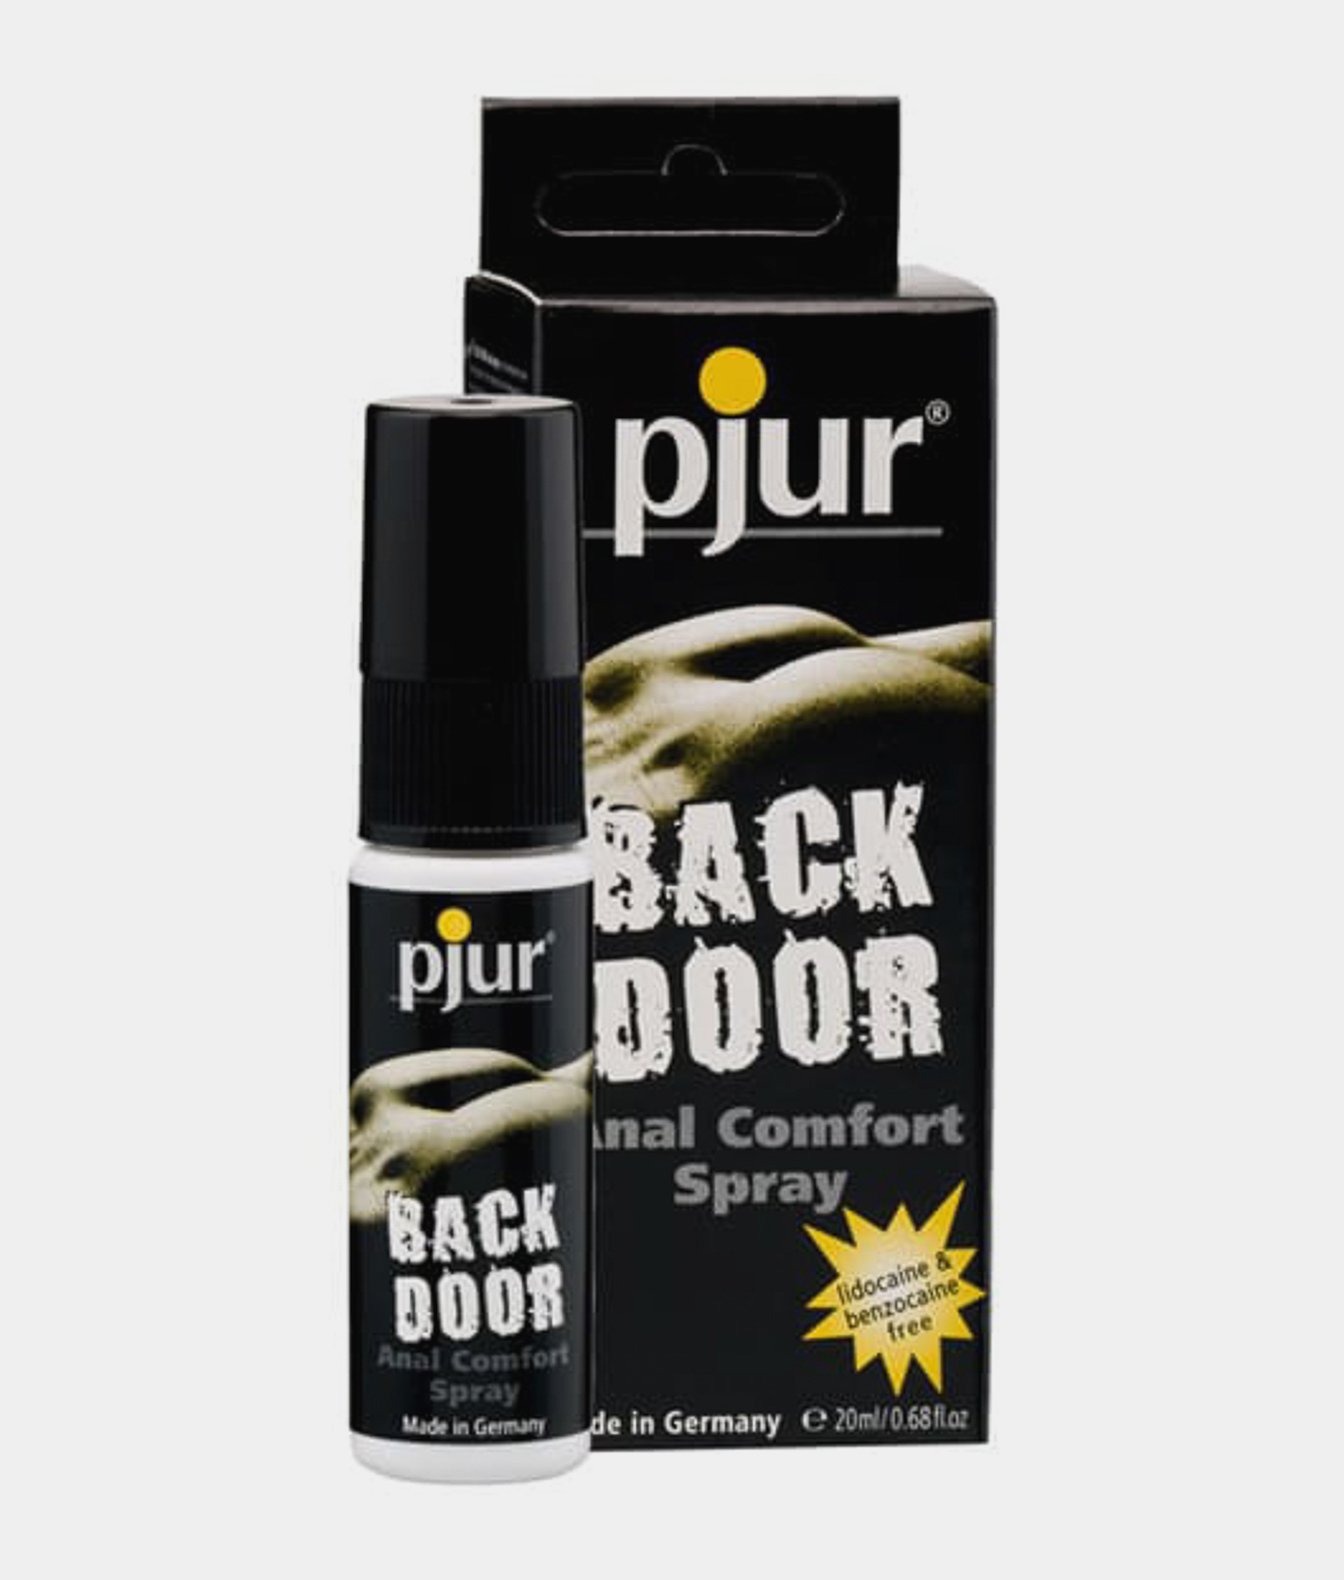 Pjur Back Door Anal Comfort Spray spray relaksujący